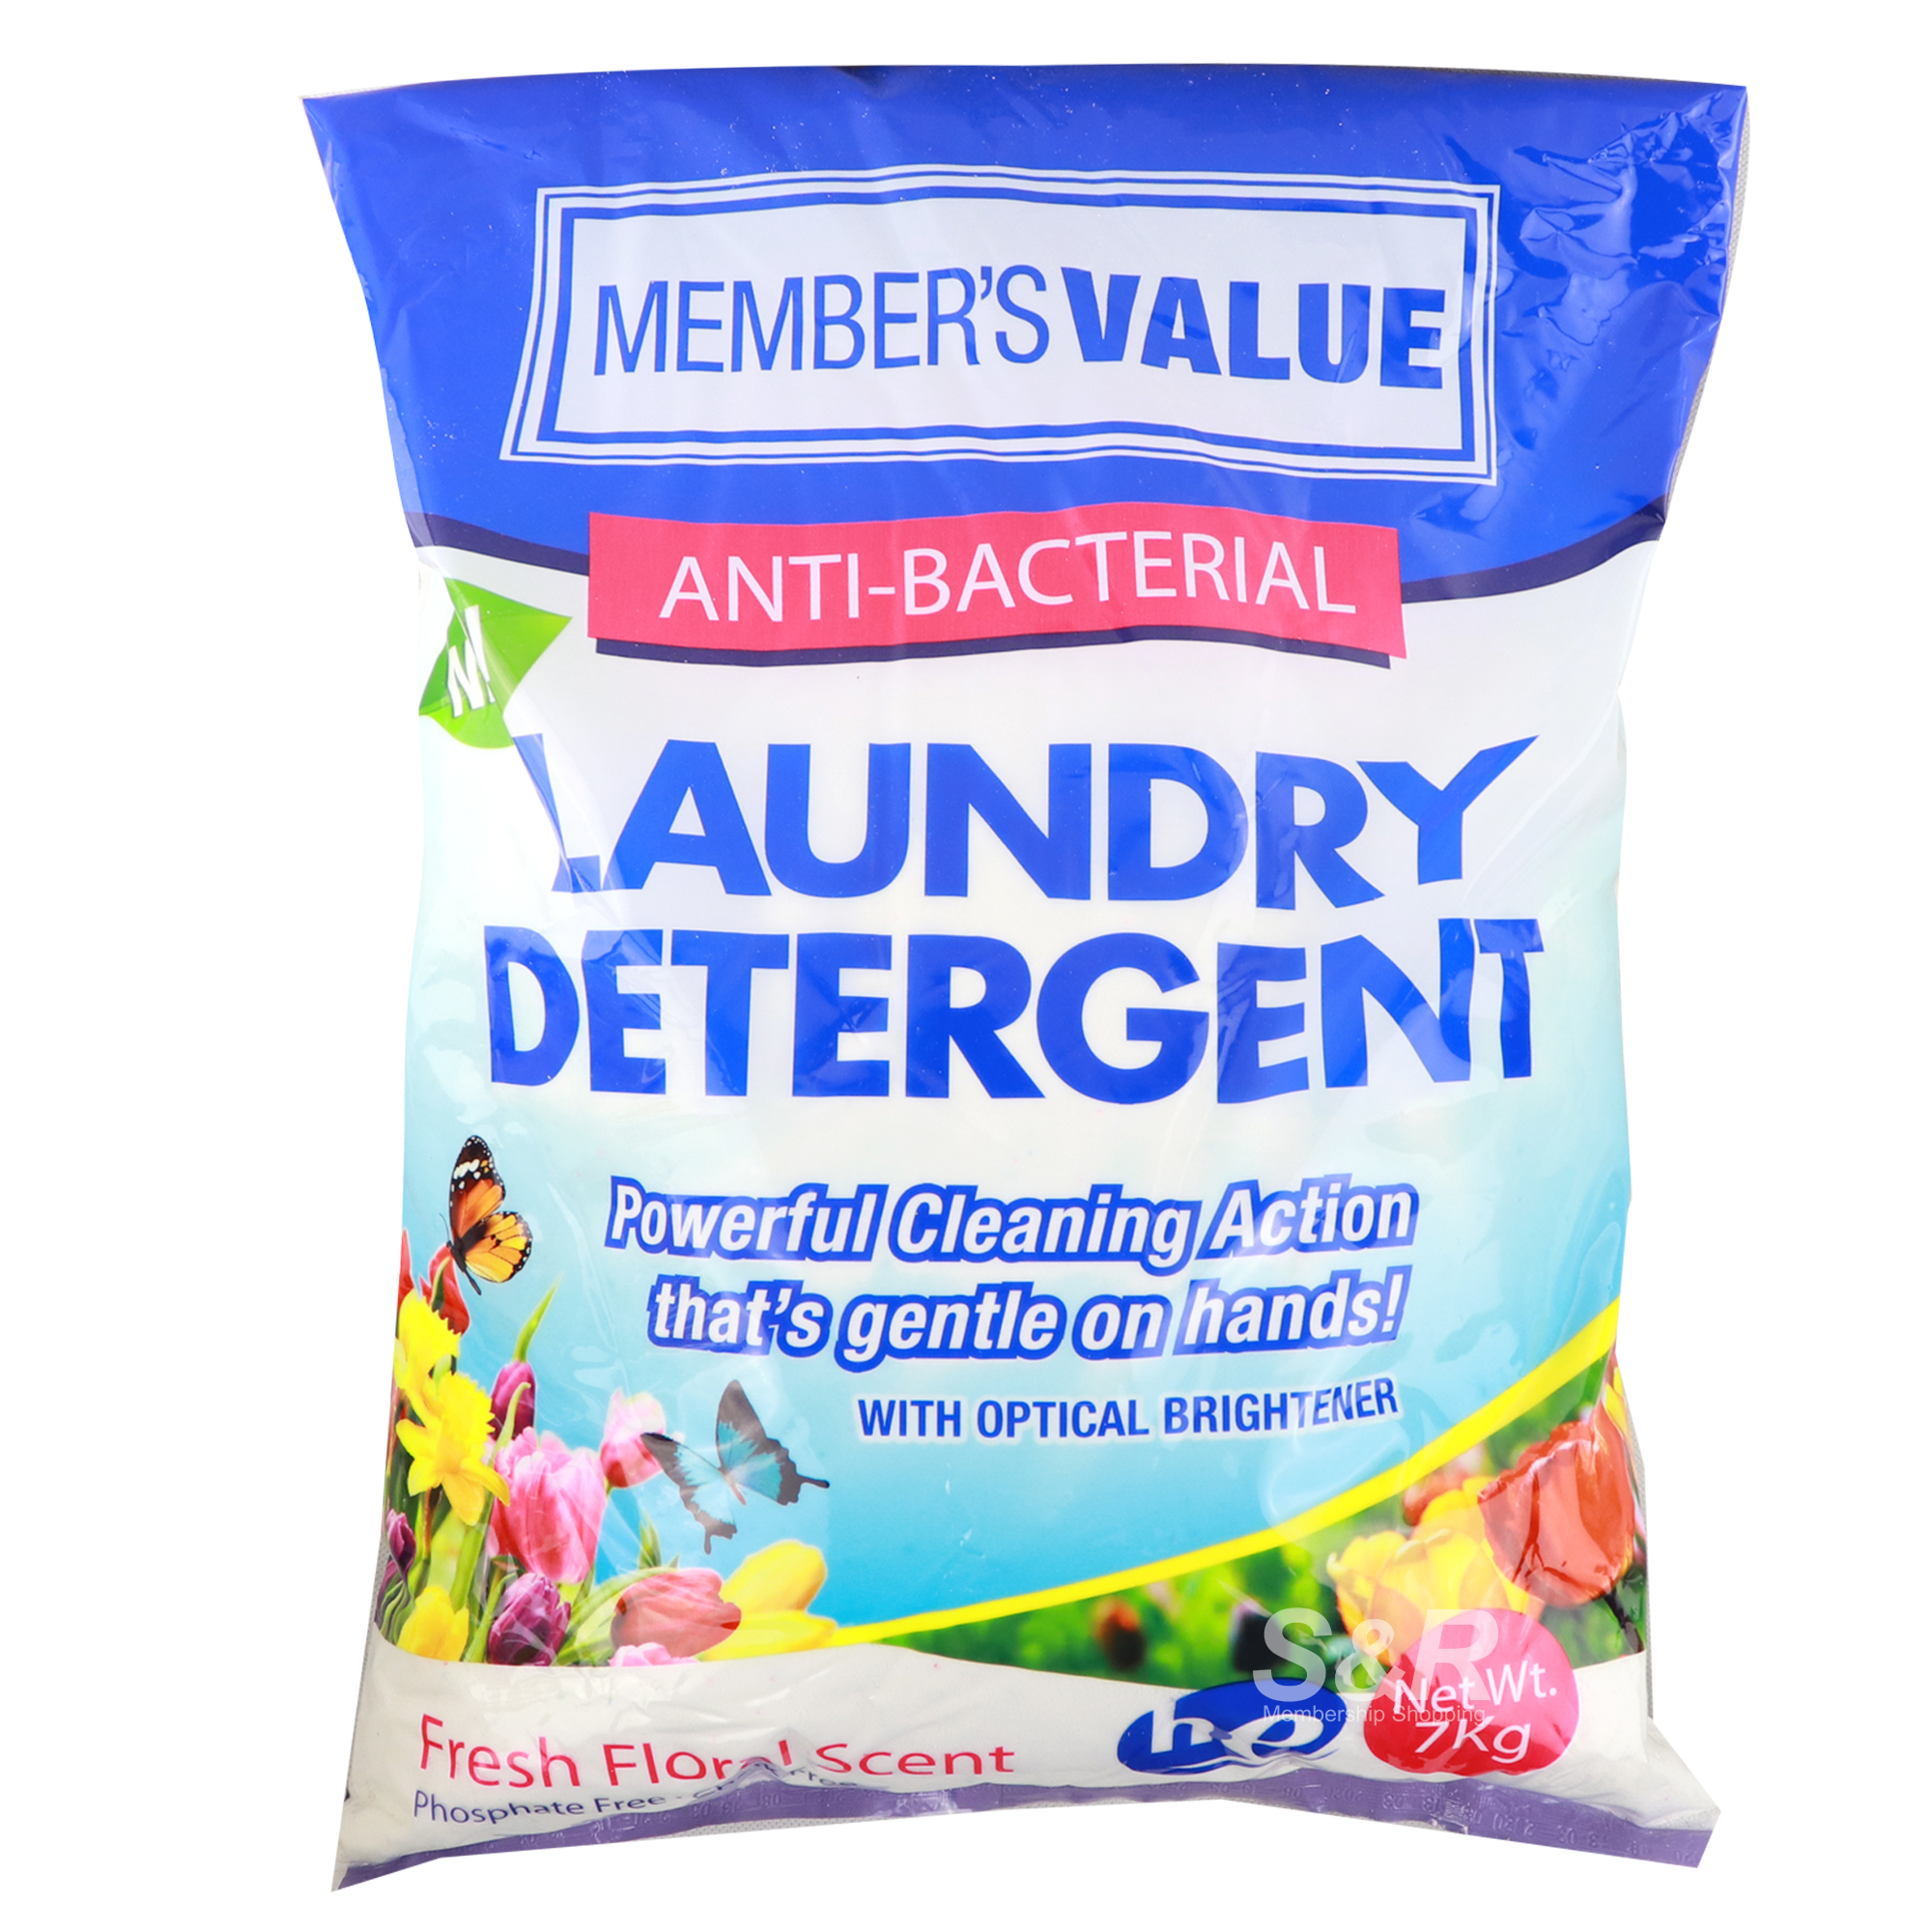 Member's Value Laundry Detergent 7kg